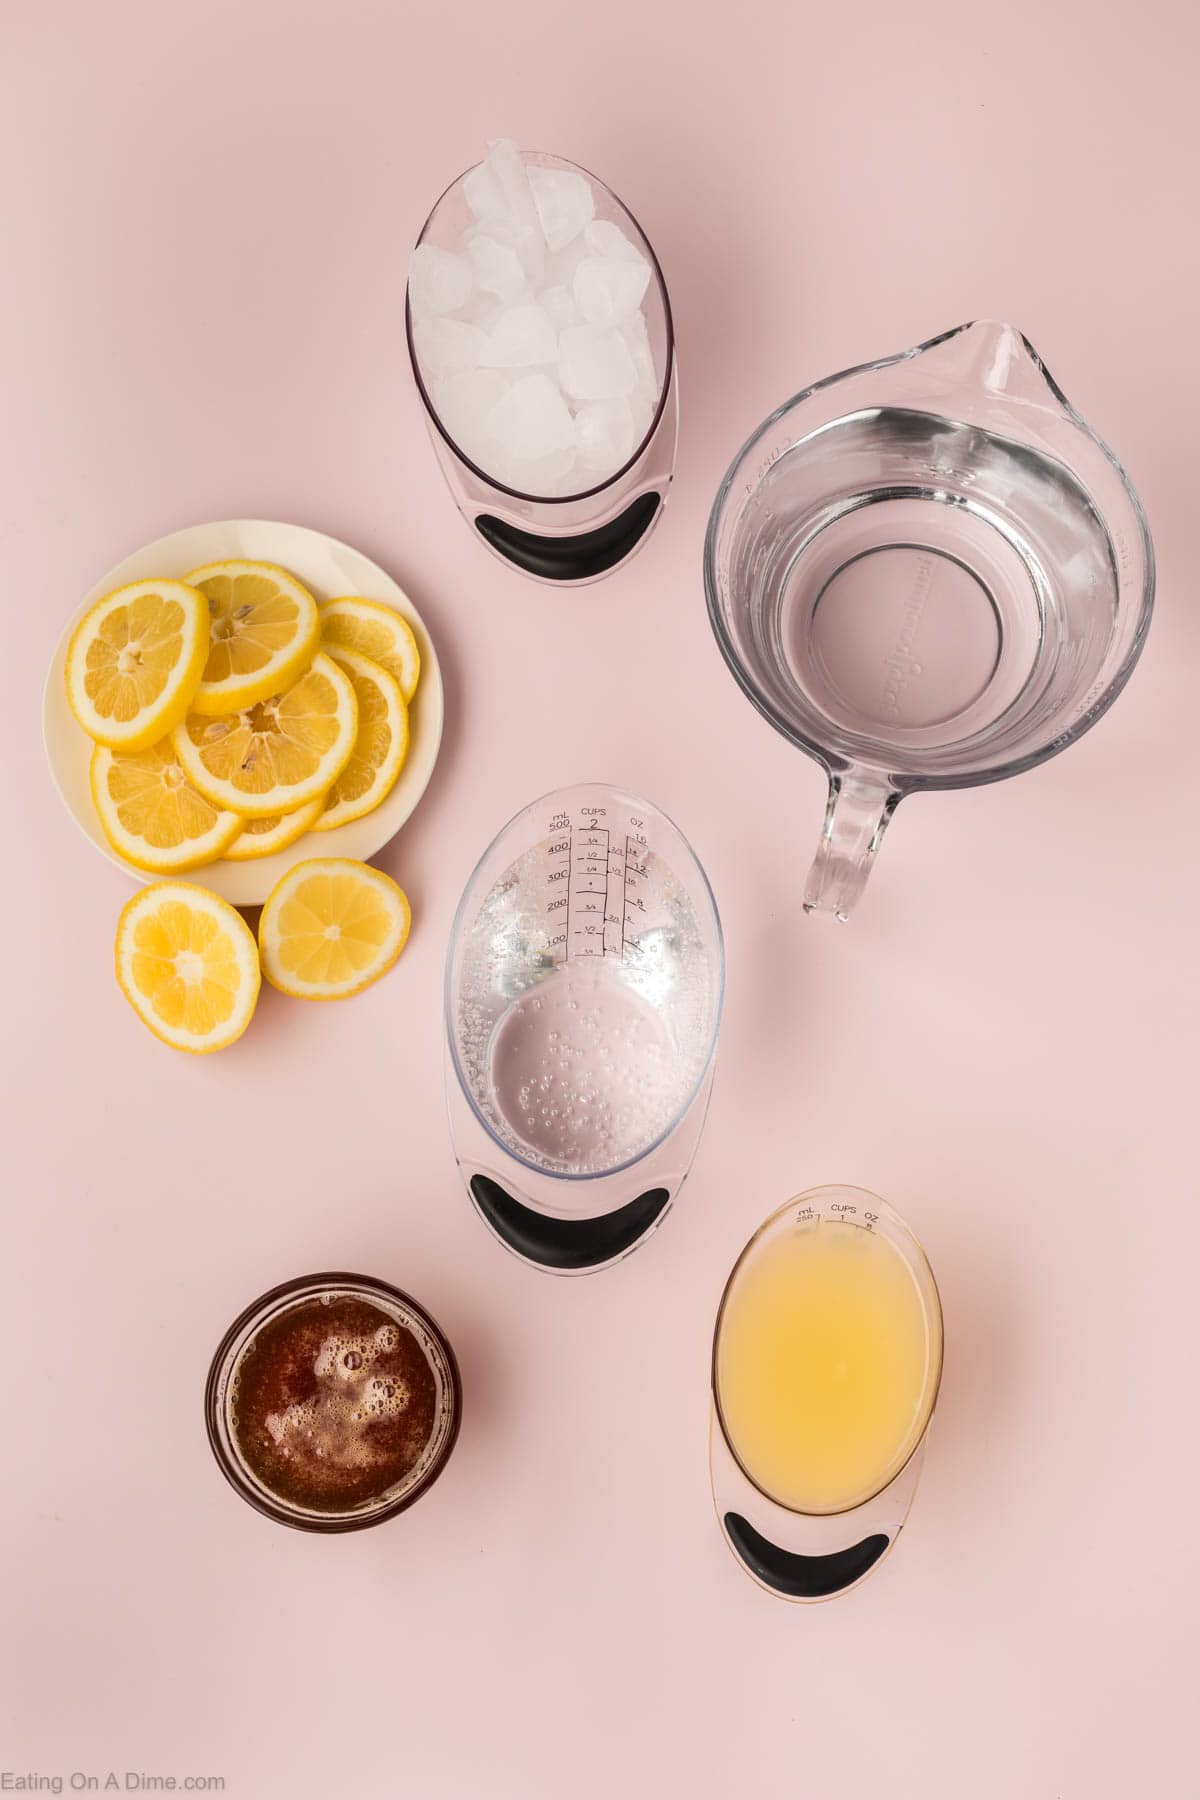 Ingredients - ice, lemon slices, water, club soda, honey, and fresh lemon juice